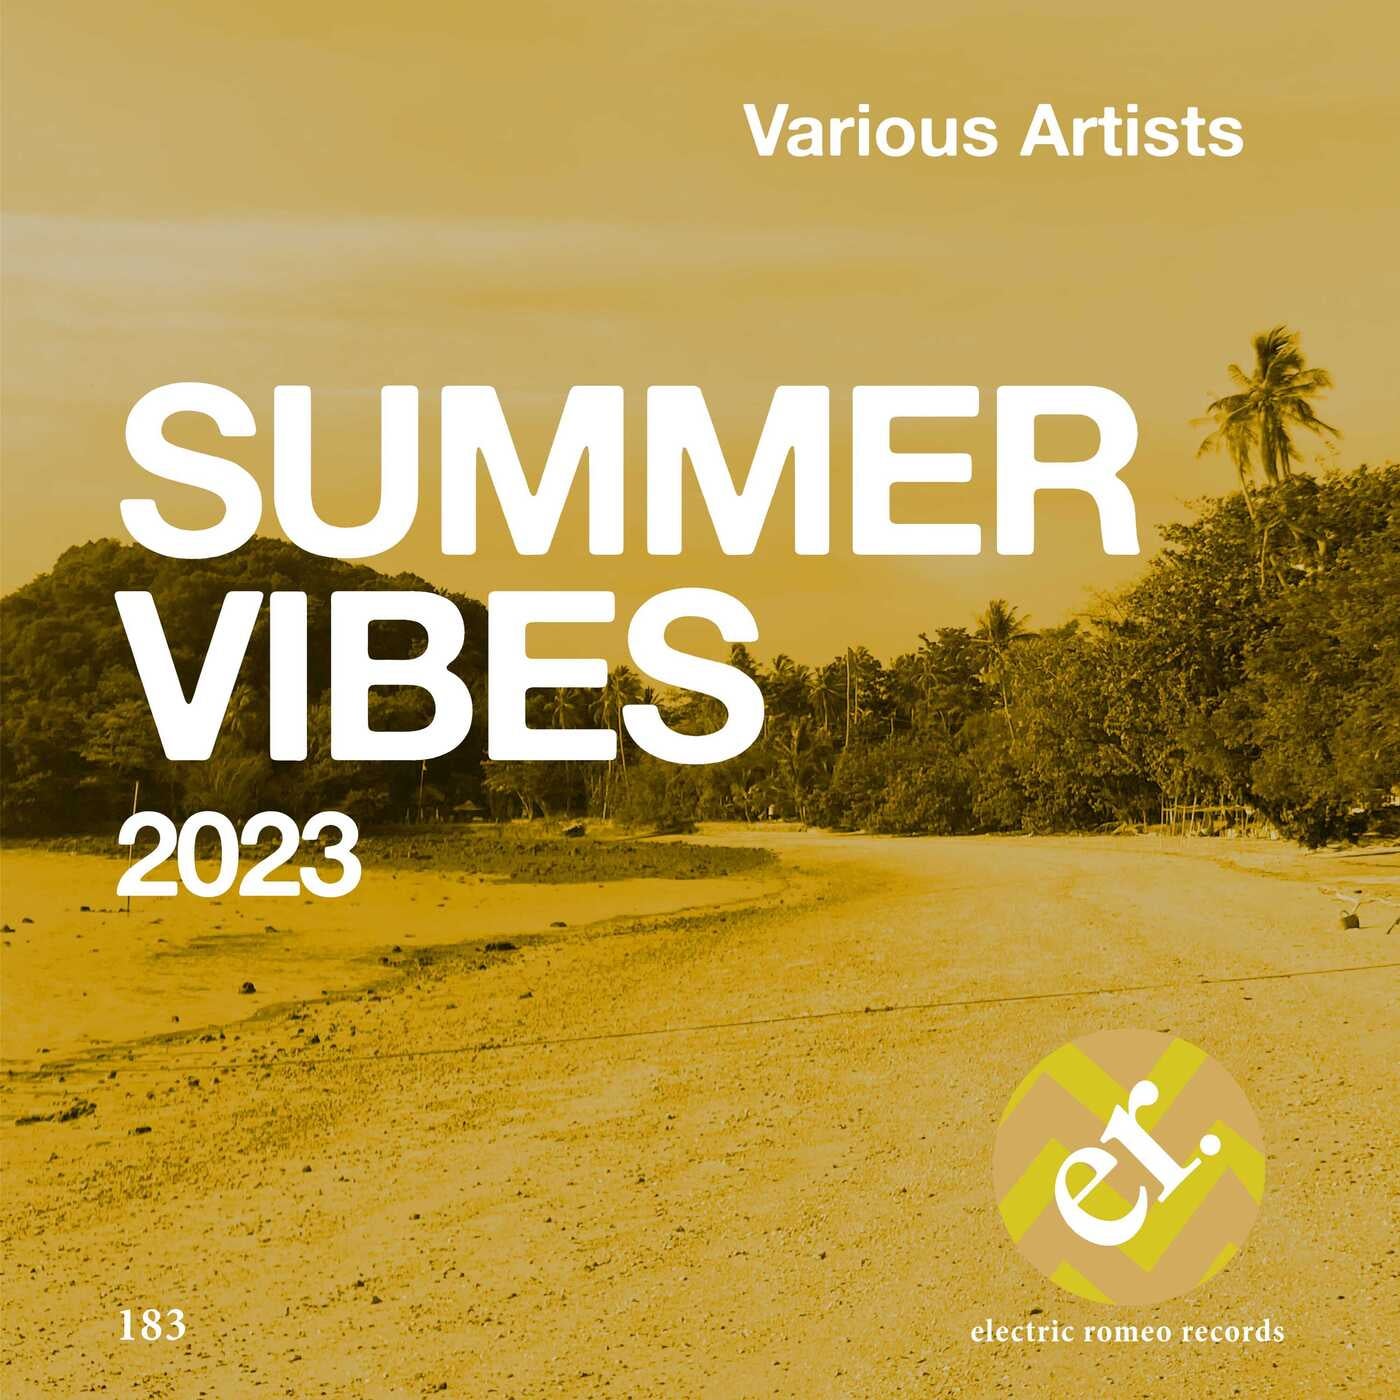 Various Artists Summer Vbes 2023